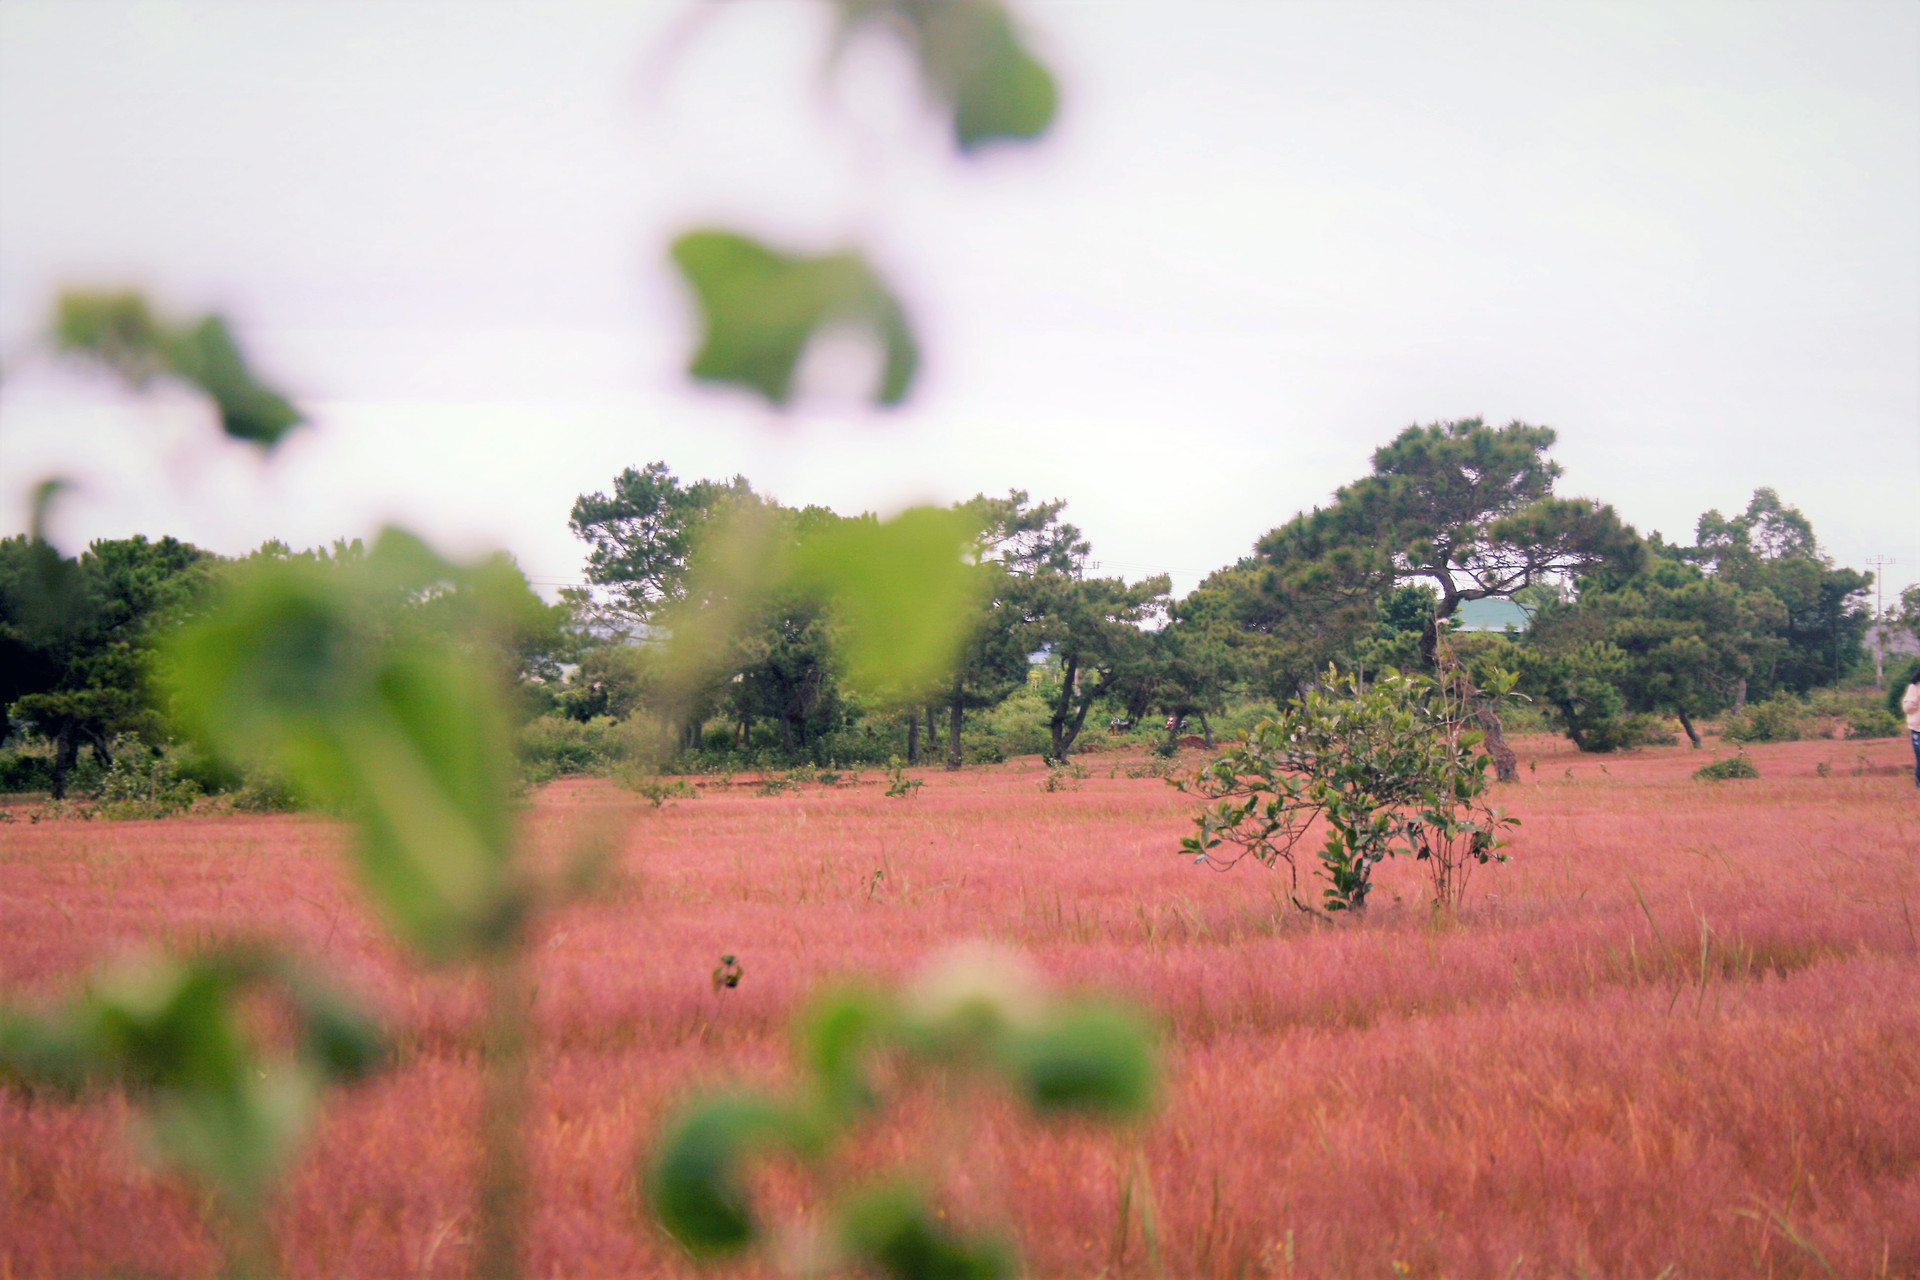 Mùa cỏ hồng hoang hoải hút chân du khách